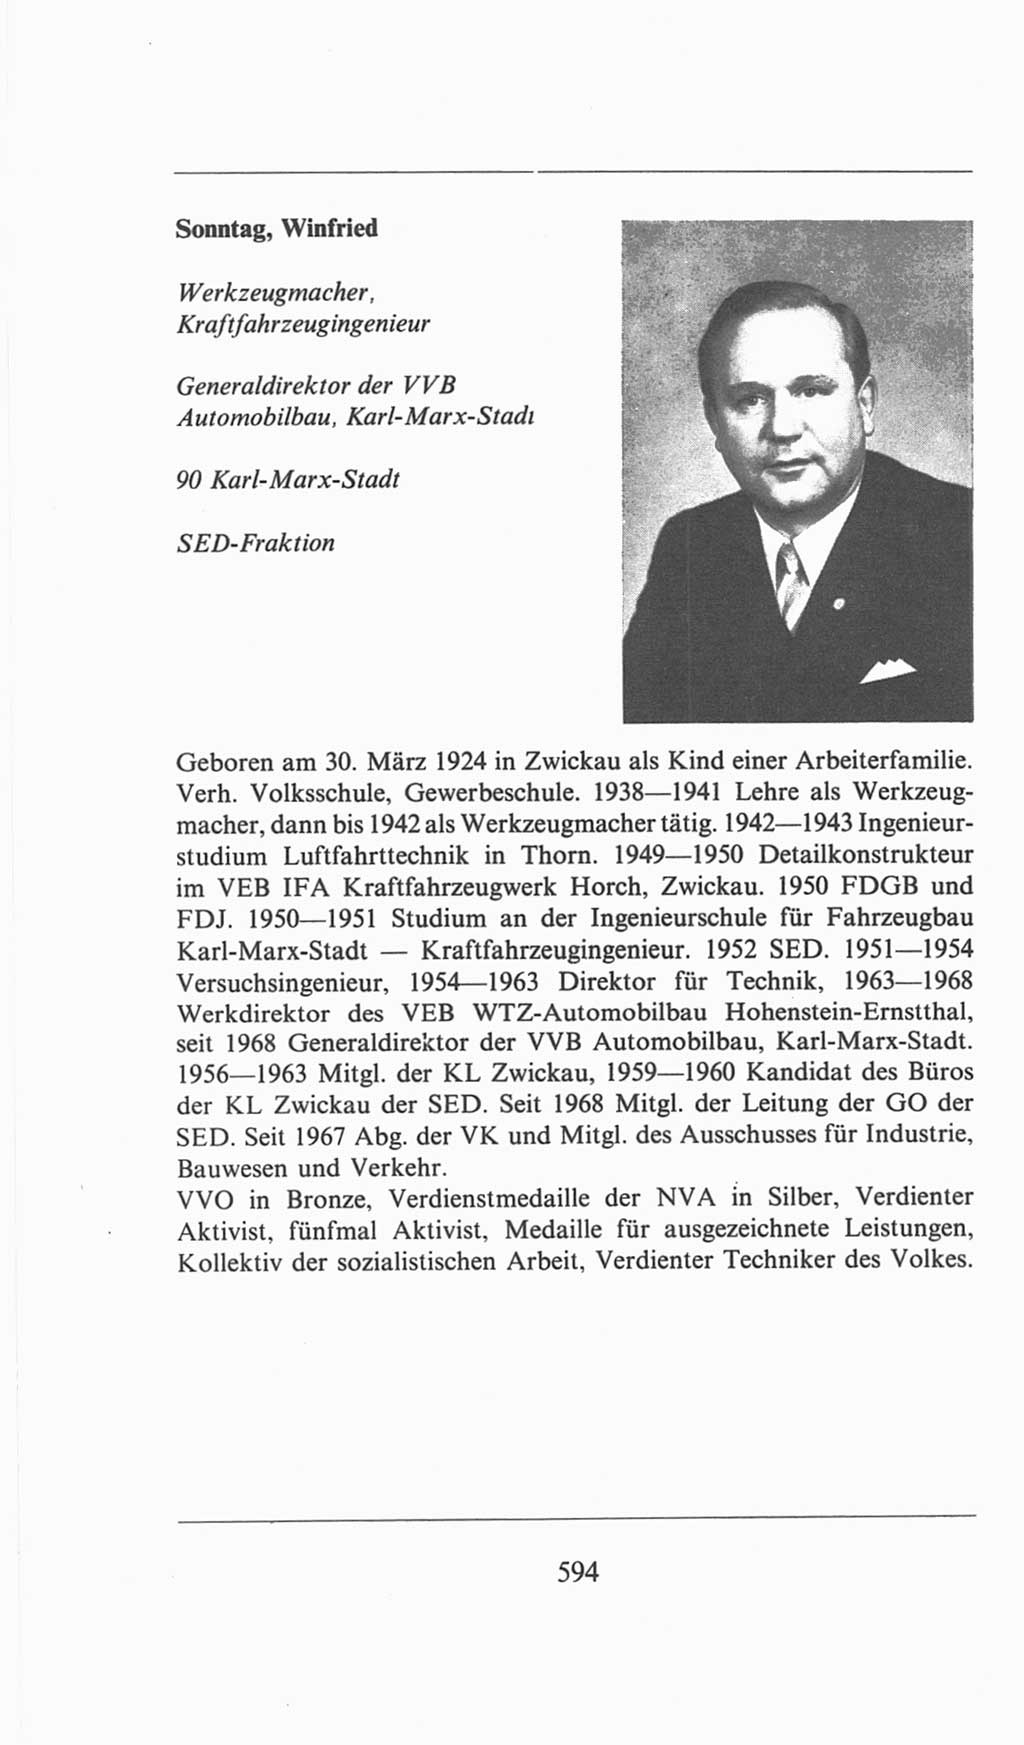 Volkskammer (VK) der Deutschen Demokratischen Republik (DDR), 6. Wahlperiode 1971-1976, Seite 594 (VK. DDR 6. WP. 1971-1976, S. 594)